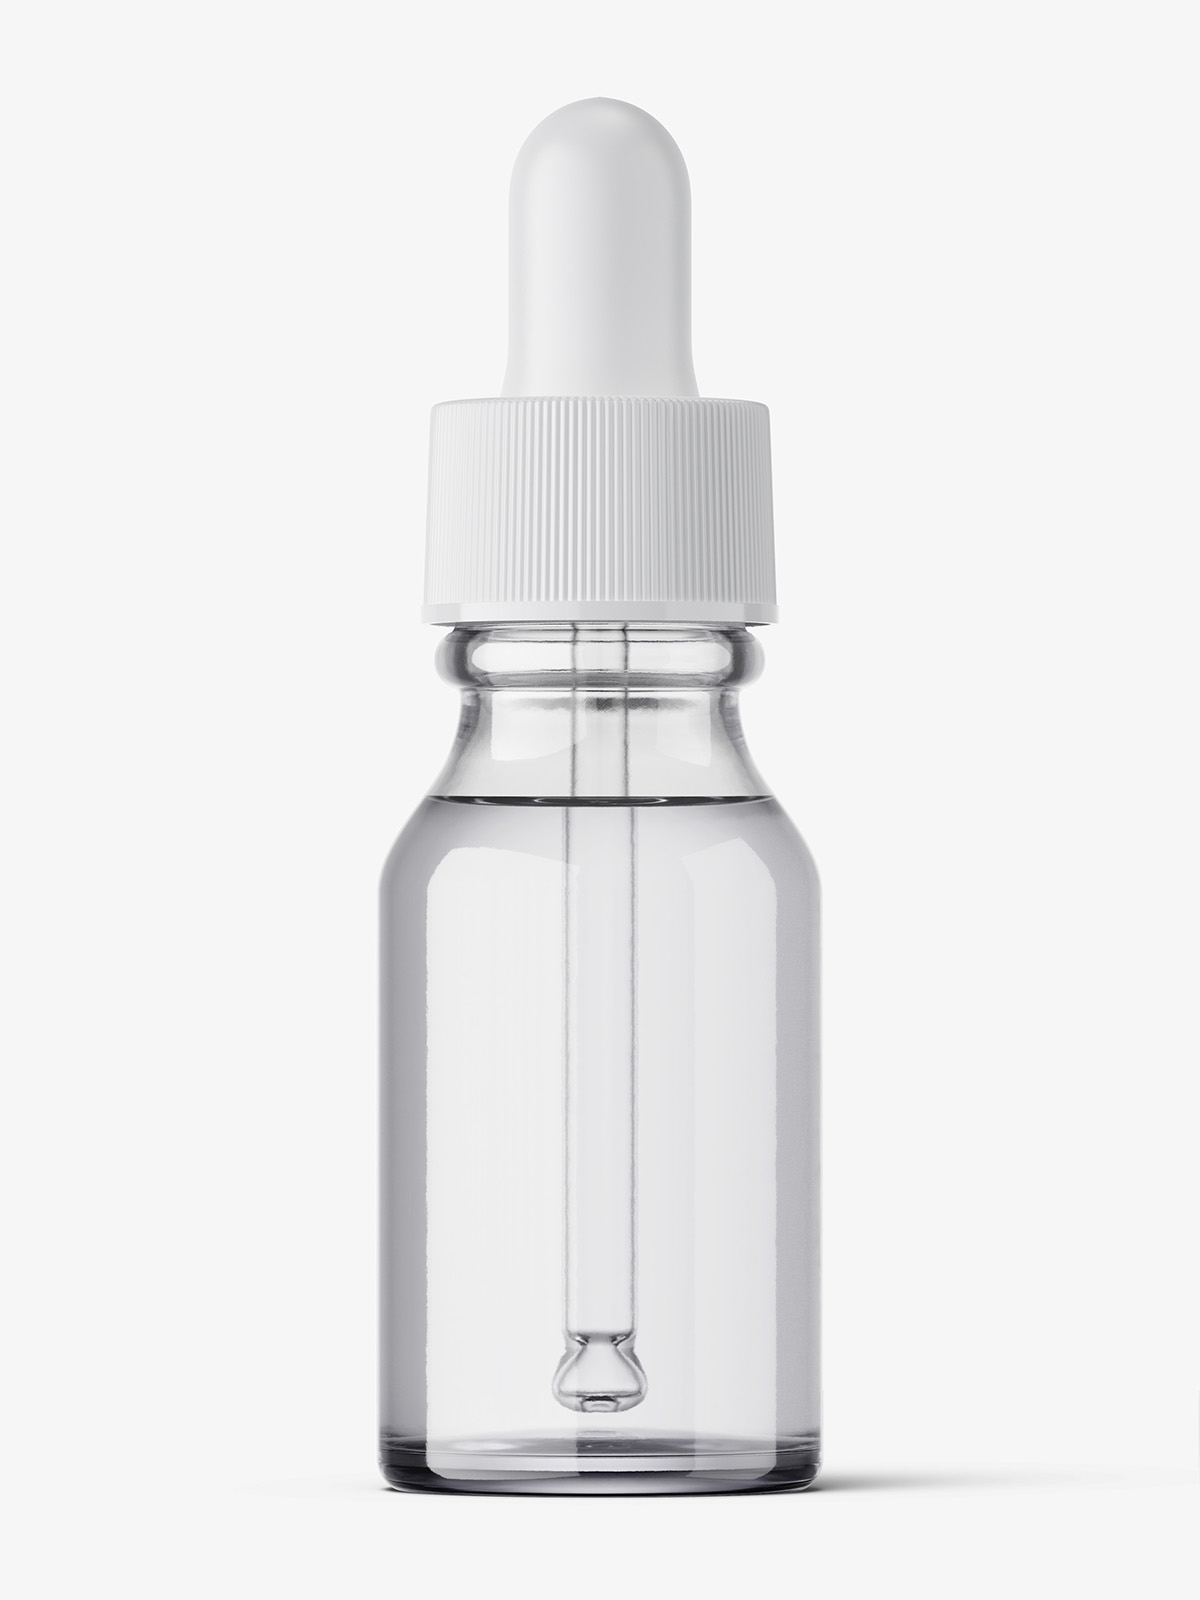 Download Transparent winchester dropper bottle mockup / 15 ml - Smarty Mockups